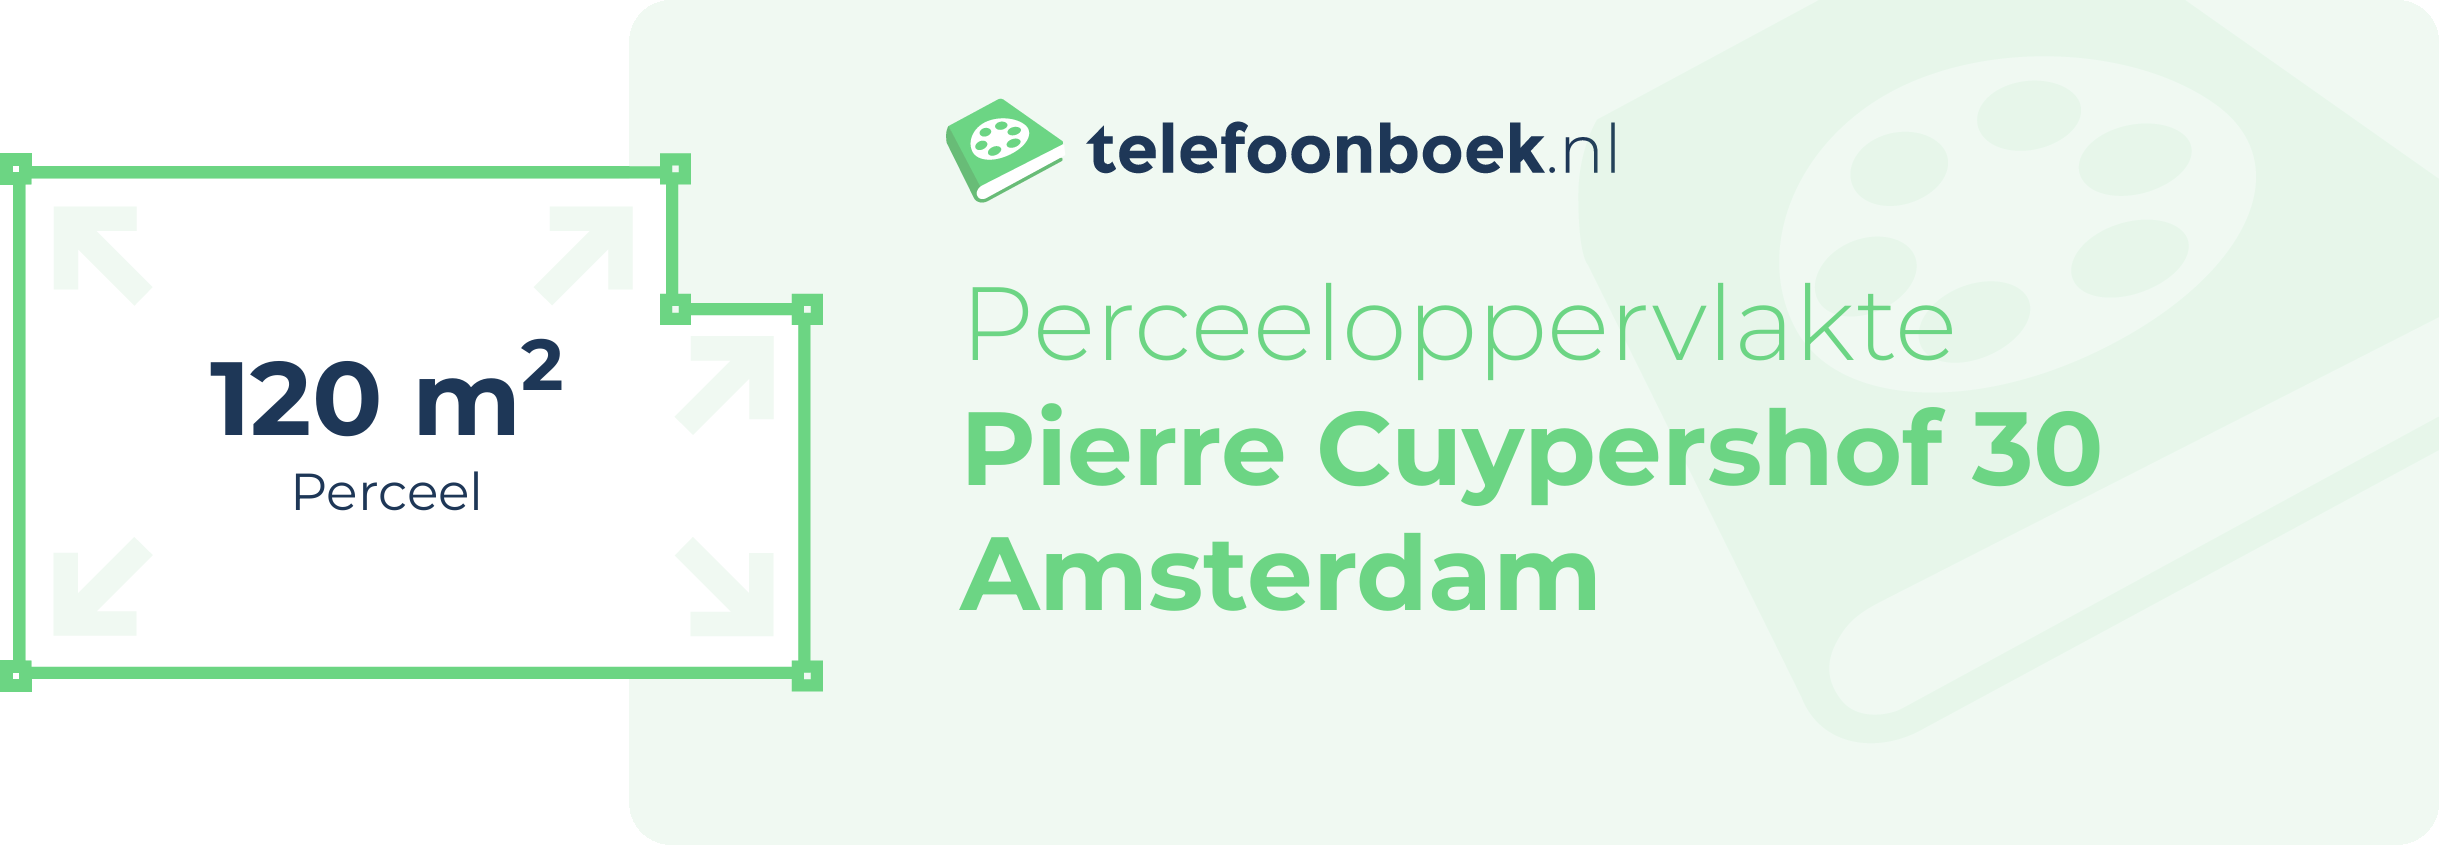 Perceeloppervlakte Pierre Cuypershof 30 Amsterdam